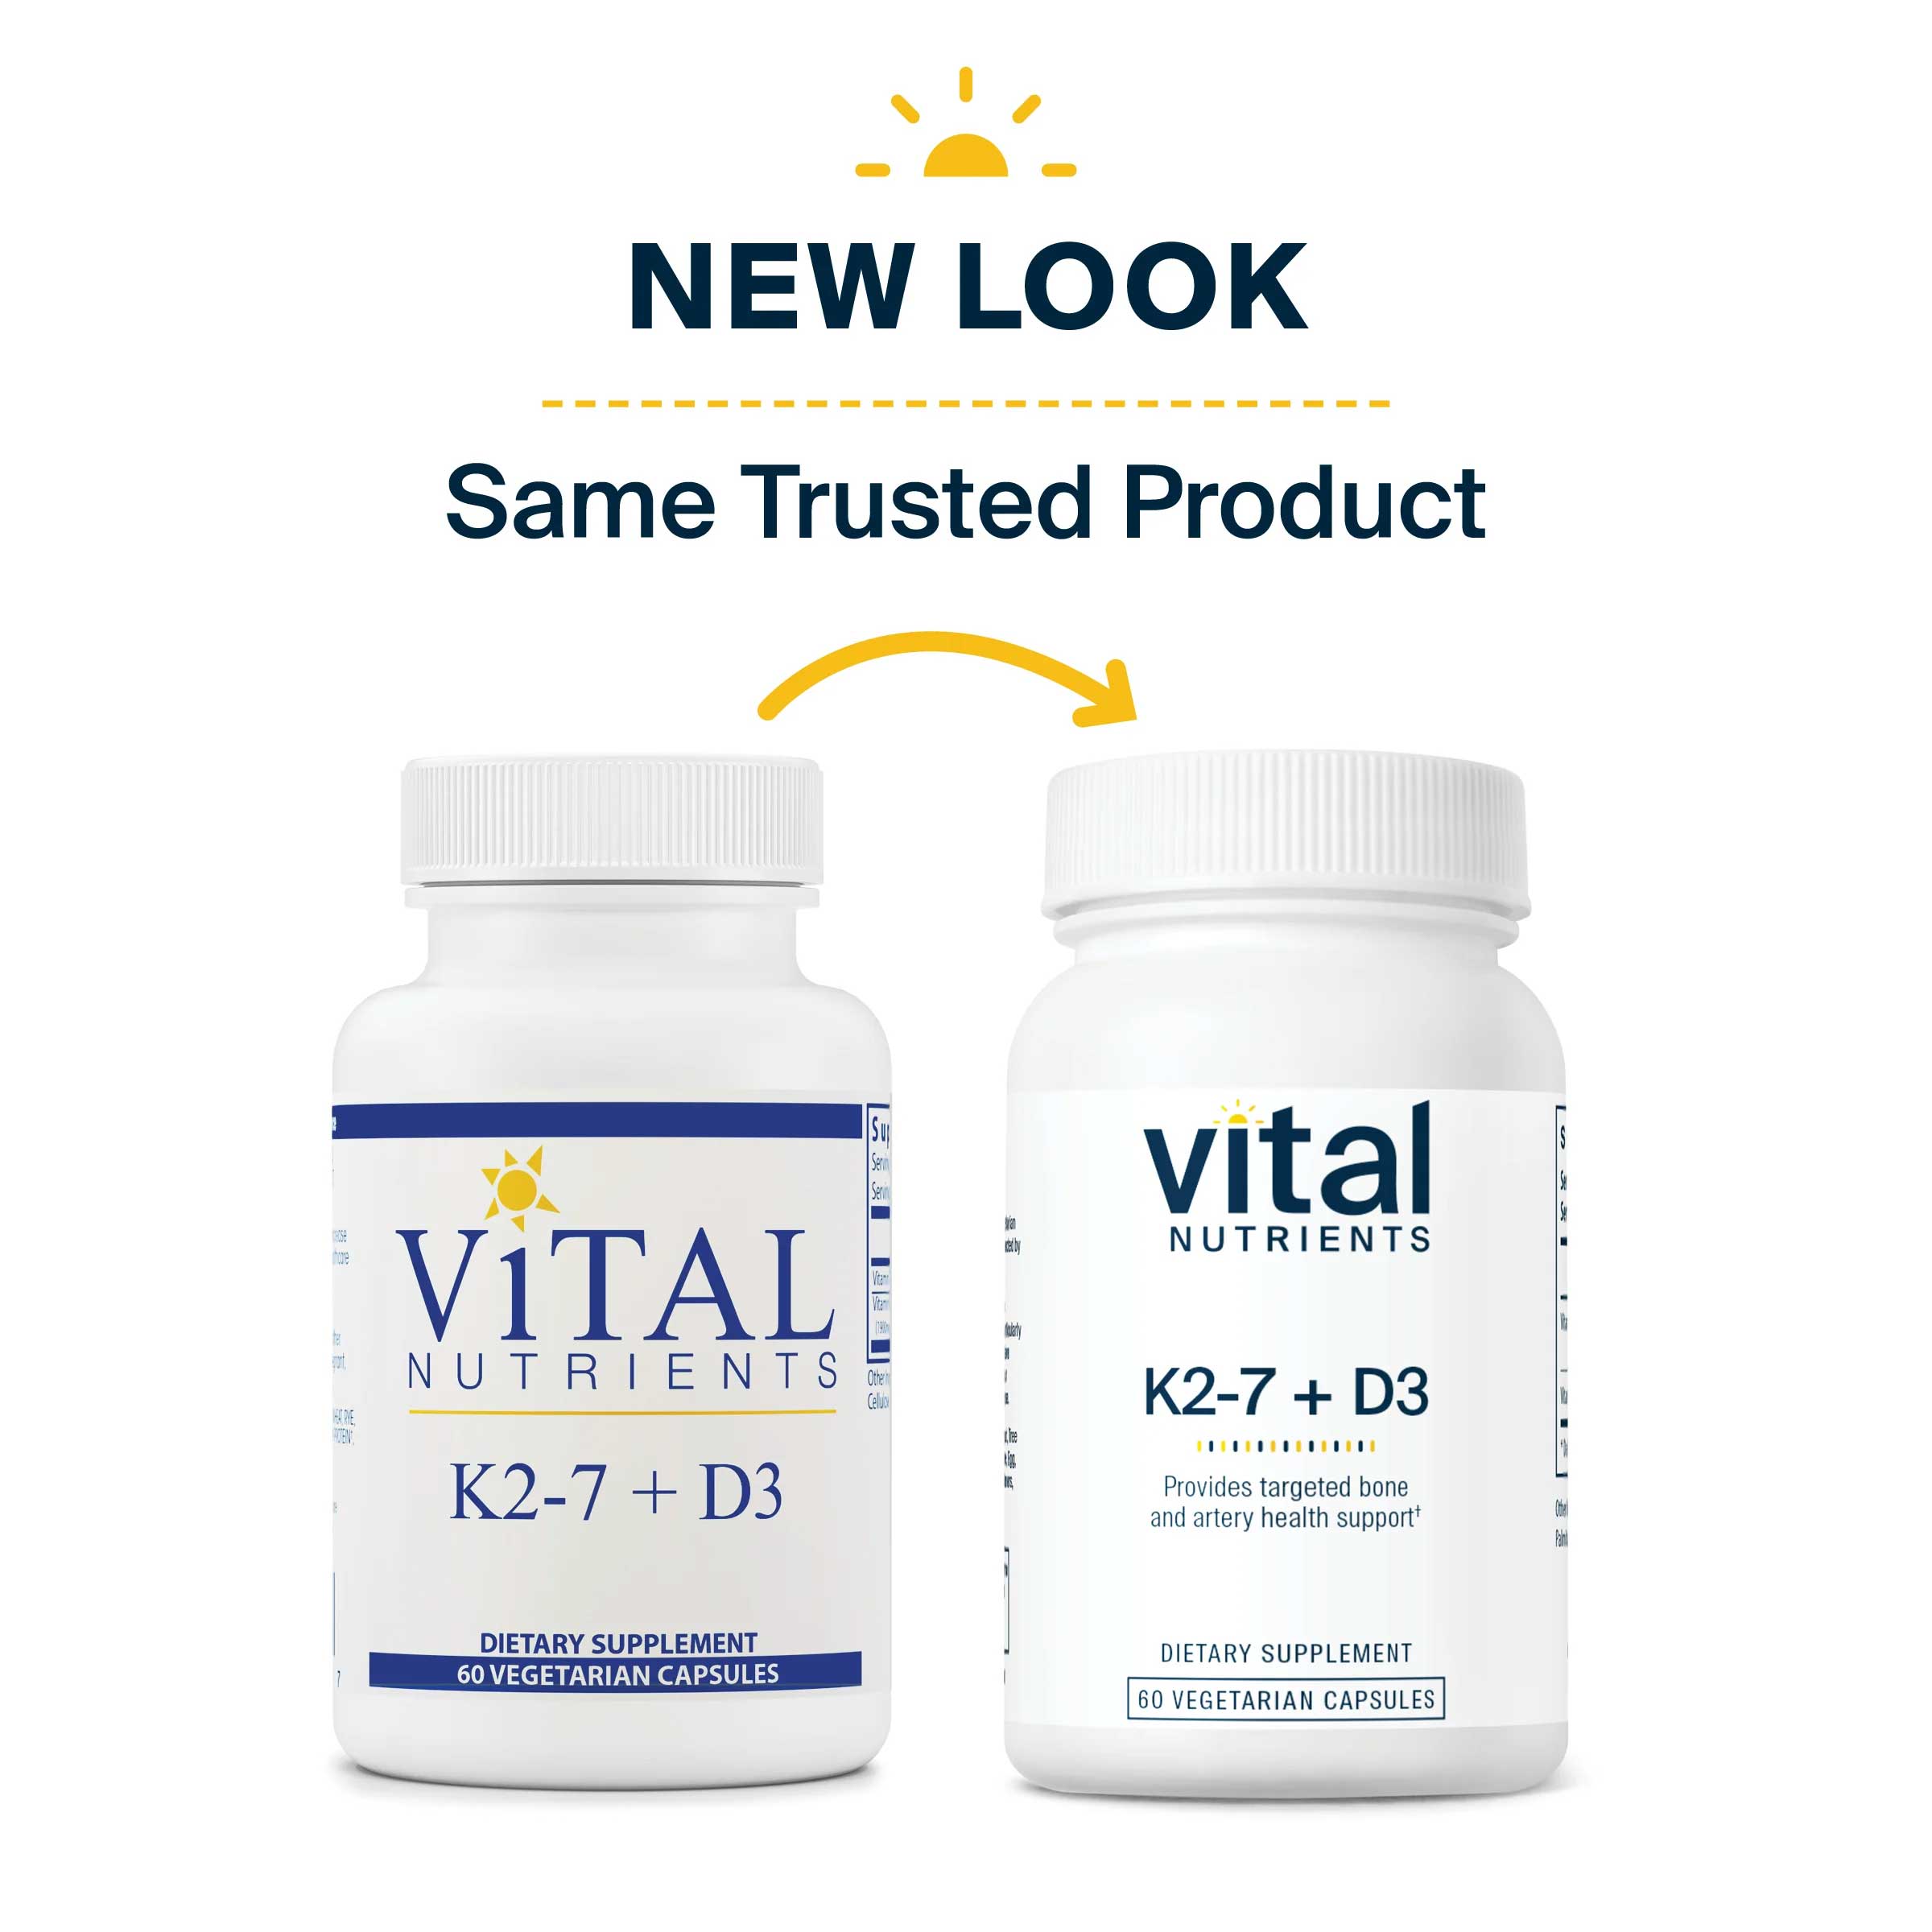 Vital Nutrients K2-7 + D3 New Look